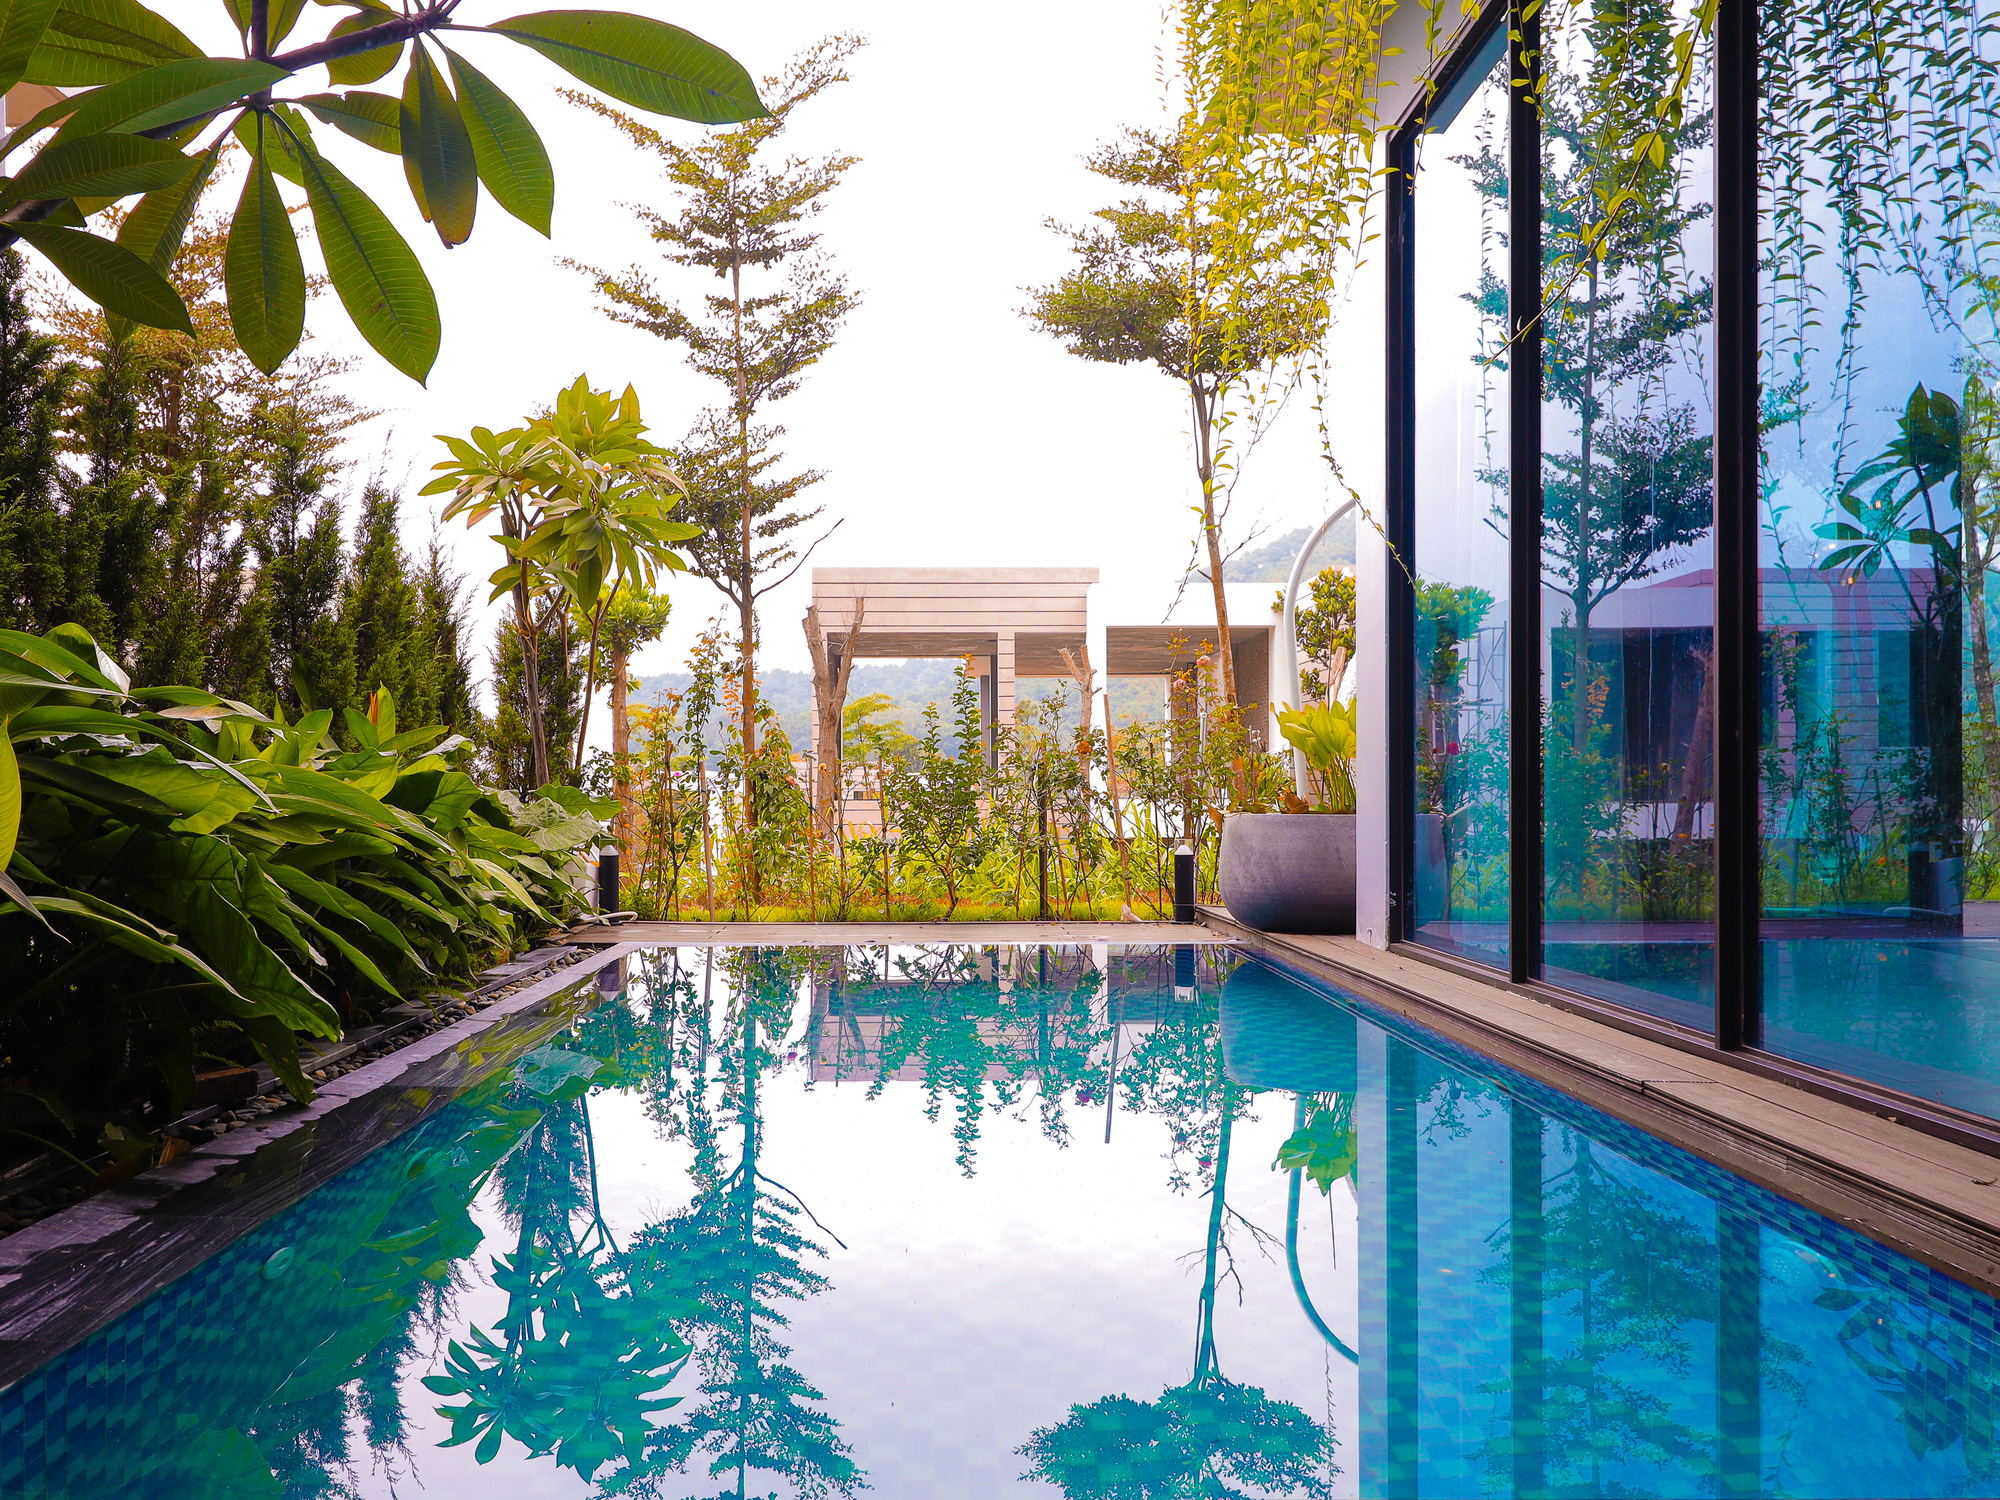 Căn nhà nhiều cây xanh với mảnh vườn bé xinh ở ngoại thành Hà Nội có chi phí hoàn thiện 3 tỷ đồng - Ảnh 5.